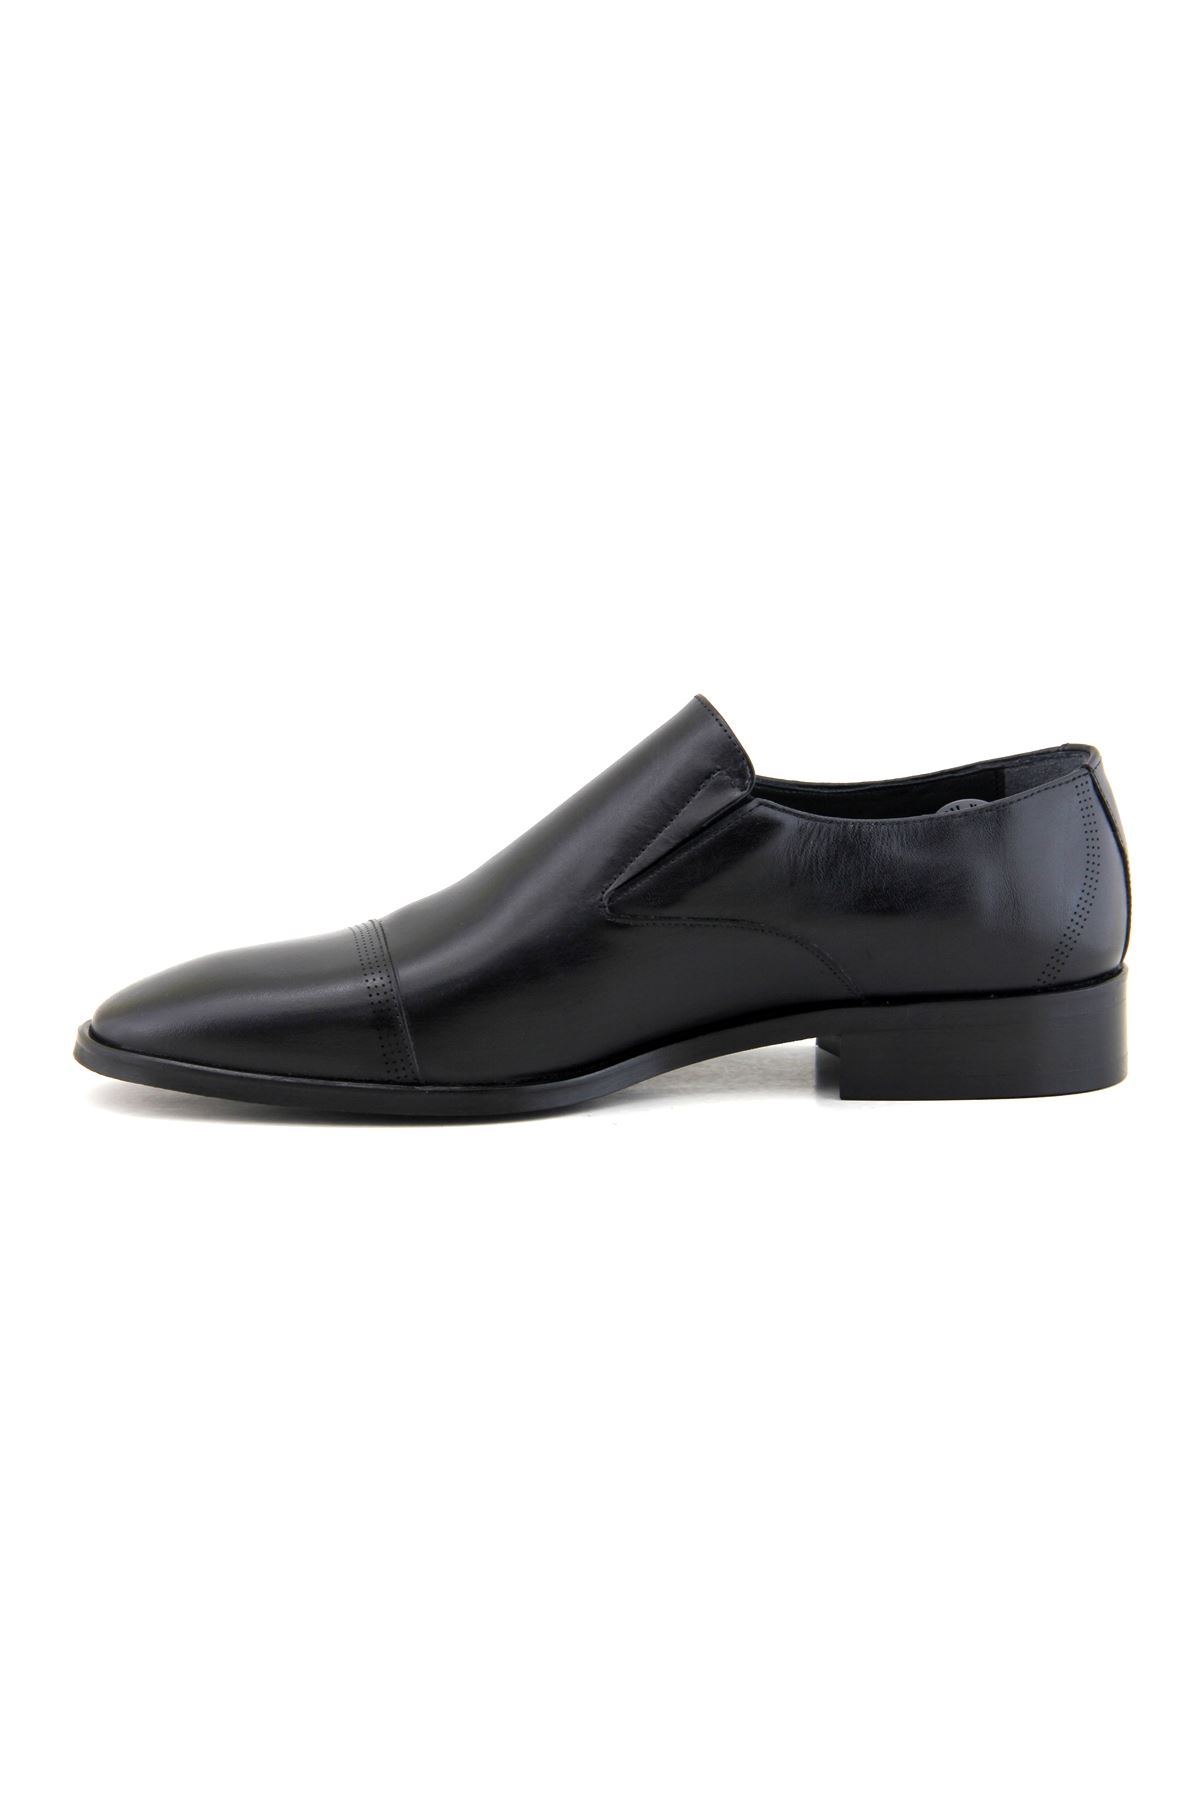 Fosco 2887 Hakiki Deri Klasik Erkek Ayakkabı - Siyah